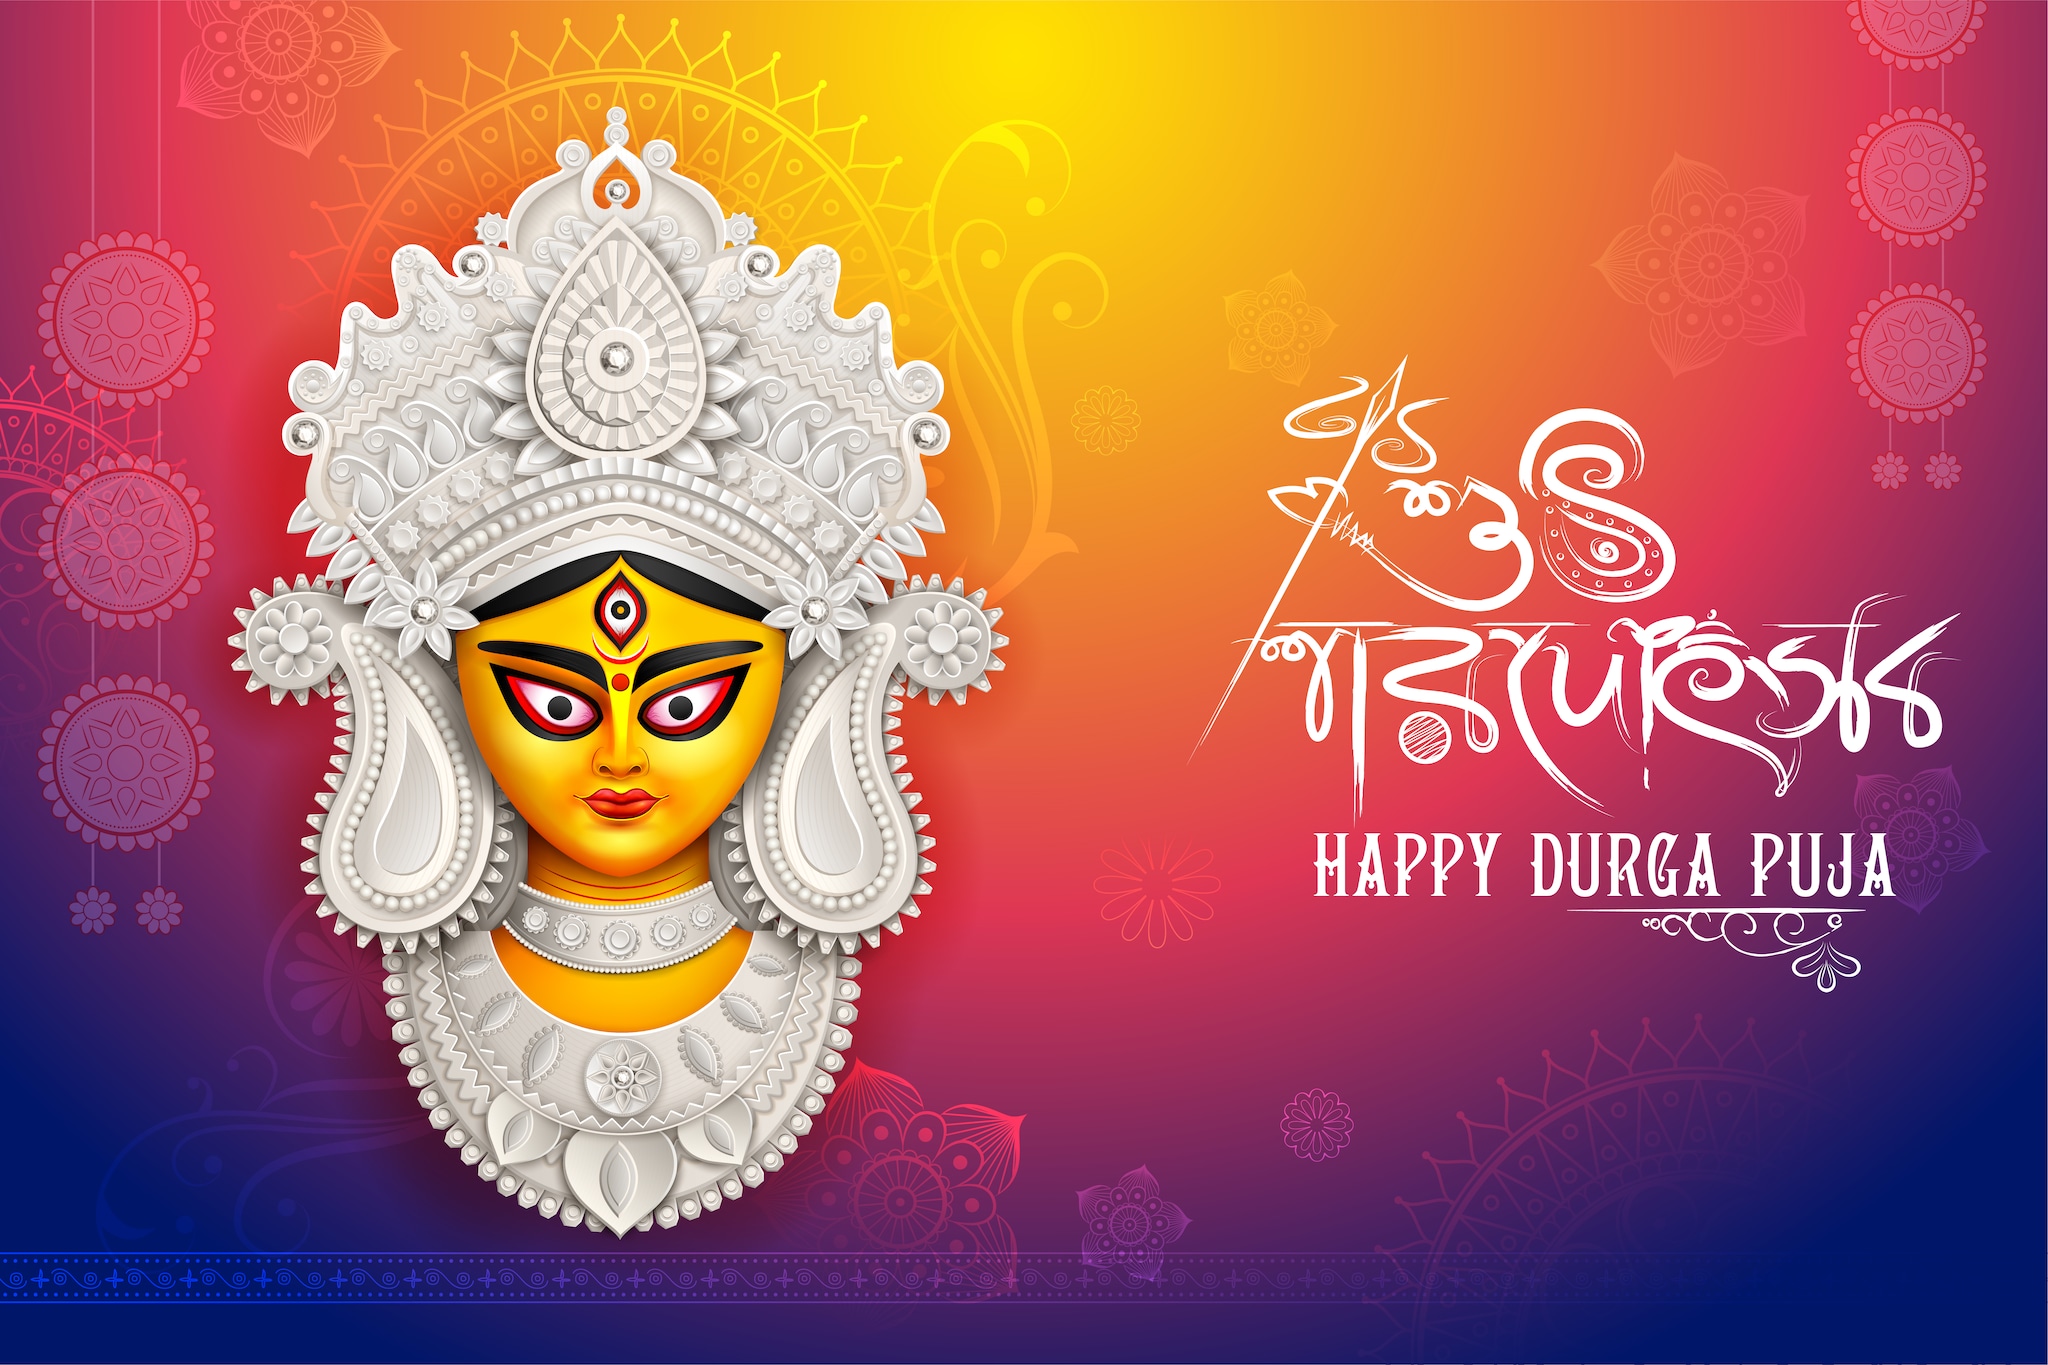 Durga Puja wishes